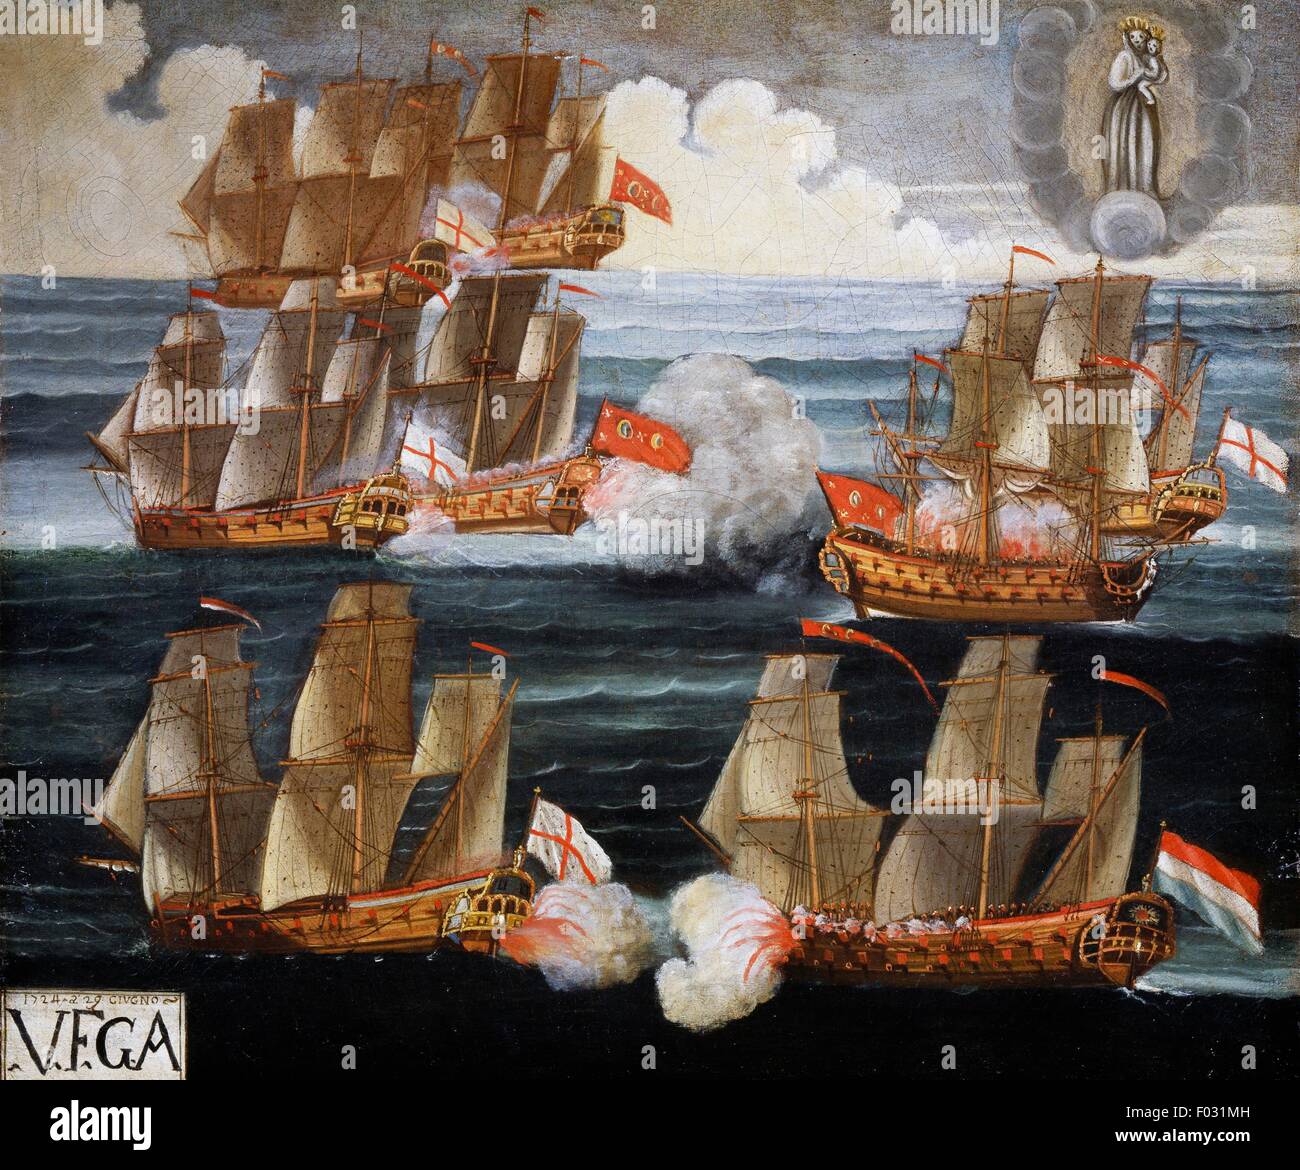 Affrontement entre navires en mer, ex-voto, Italie, 18e siècle, huile sur toile. Banque D'Images